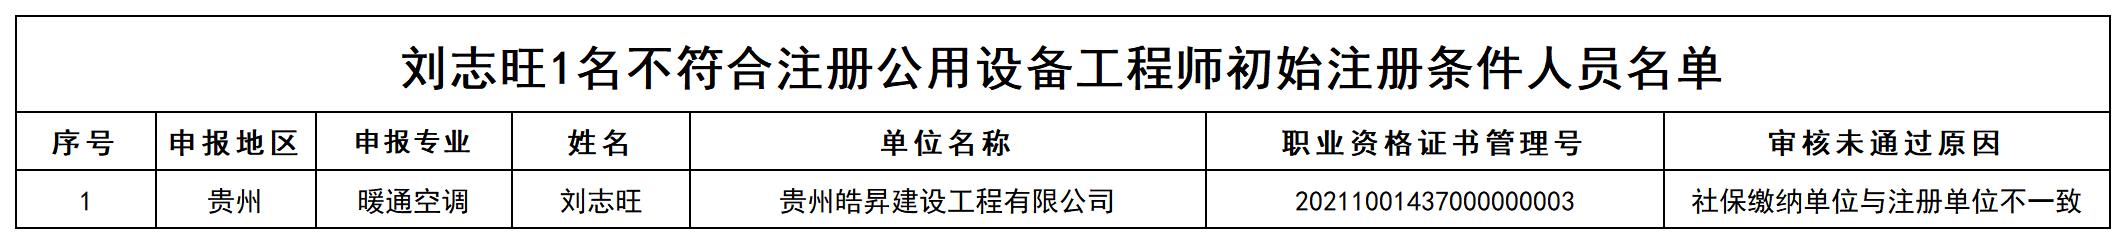 刘志旺1名不符合注册公用设备工程师初始注册条件人员名单_打印结果.jpg